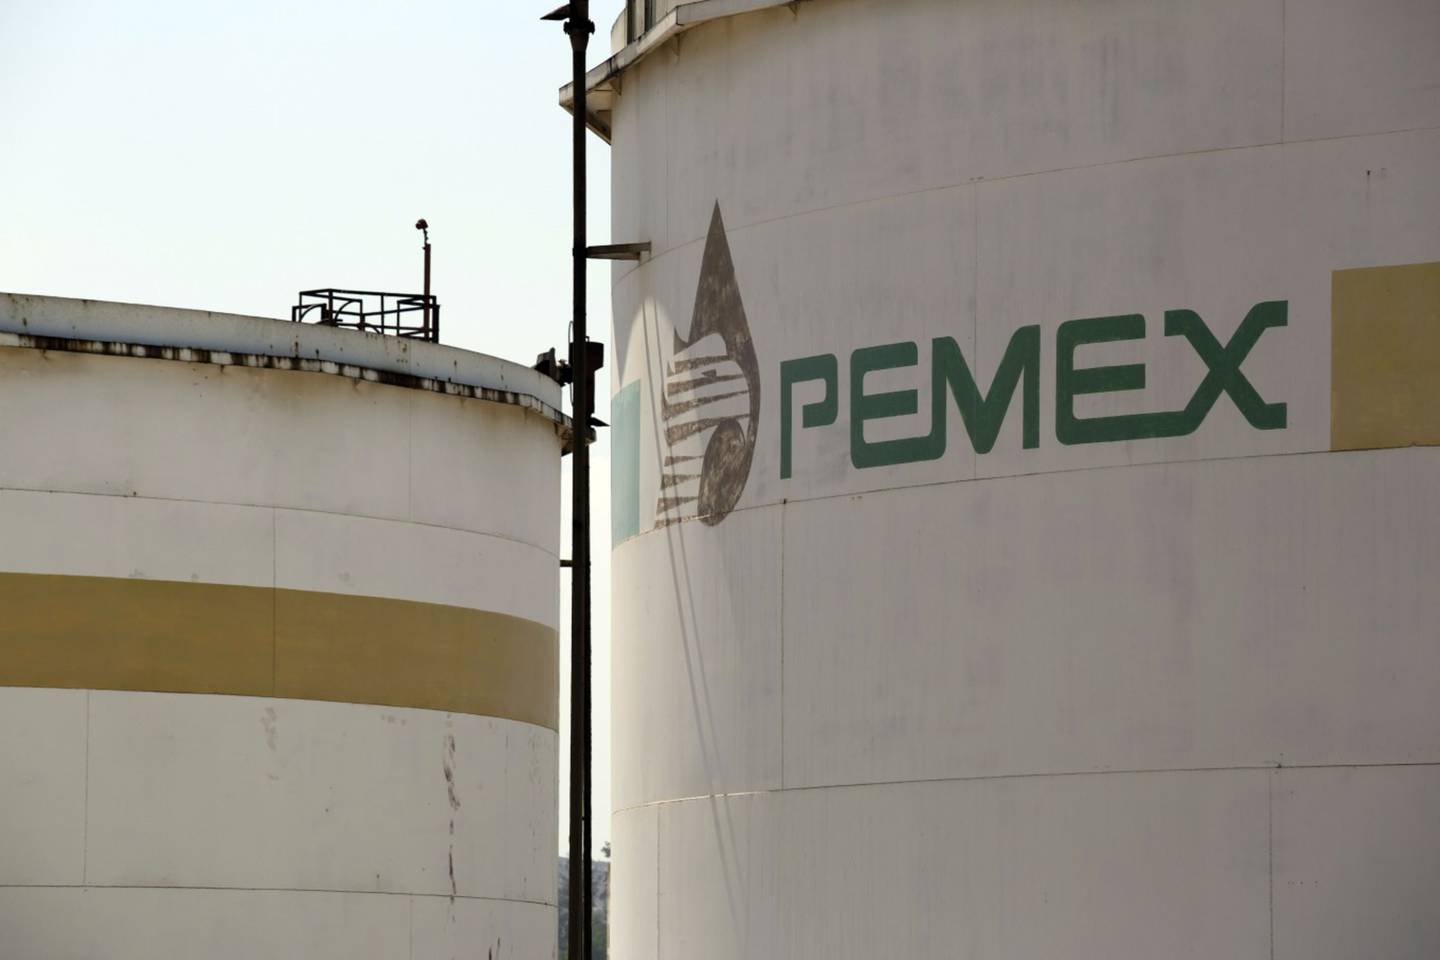 El logo de Petróleos Mexicanos (Pemex) se muestra en un tanque de almacenamiento de combustibles en la refinería de Tula, Hidalgo.